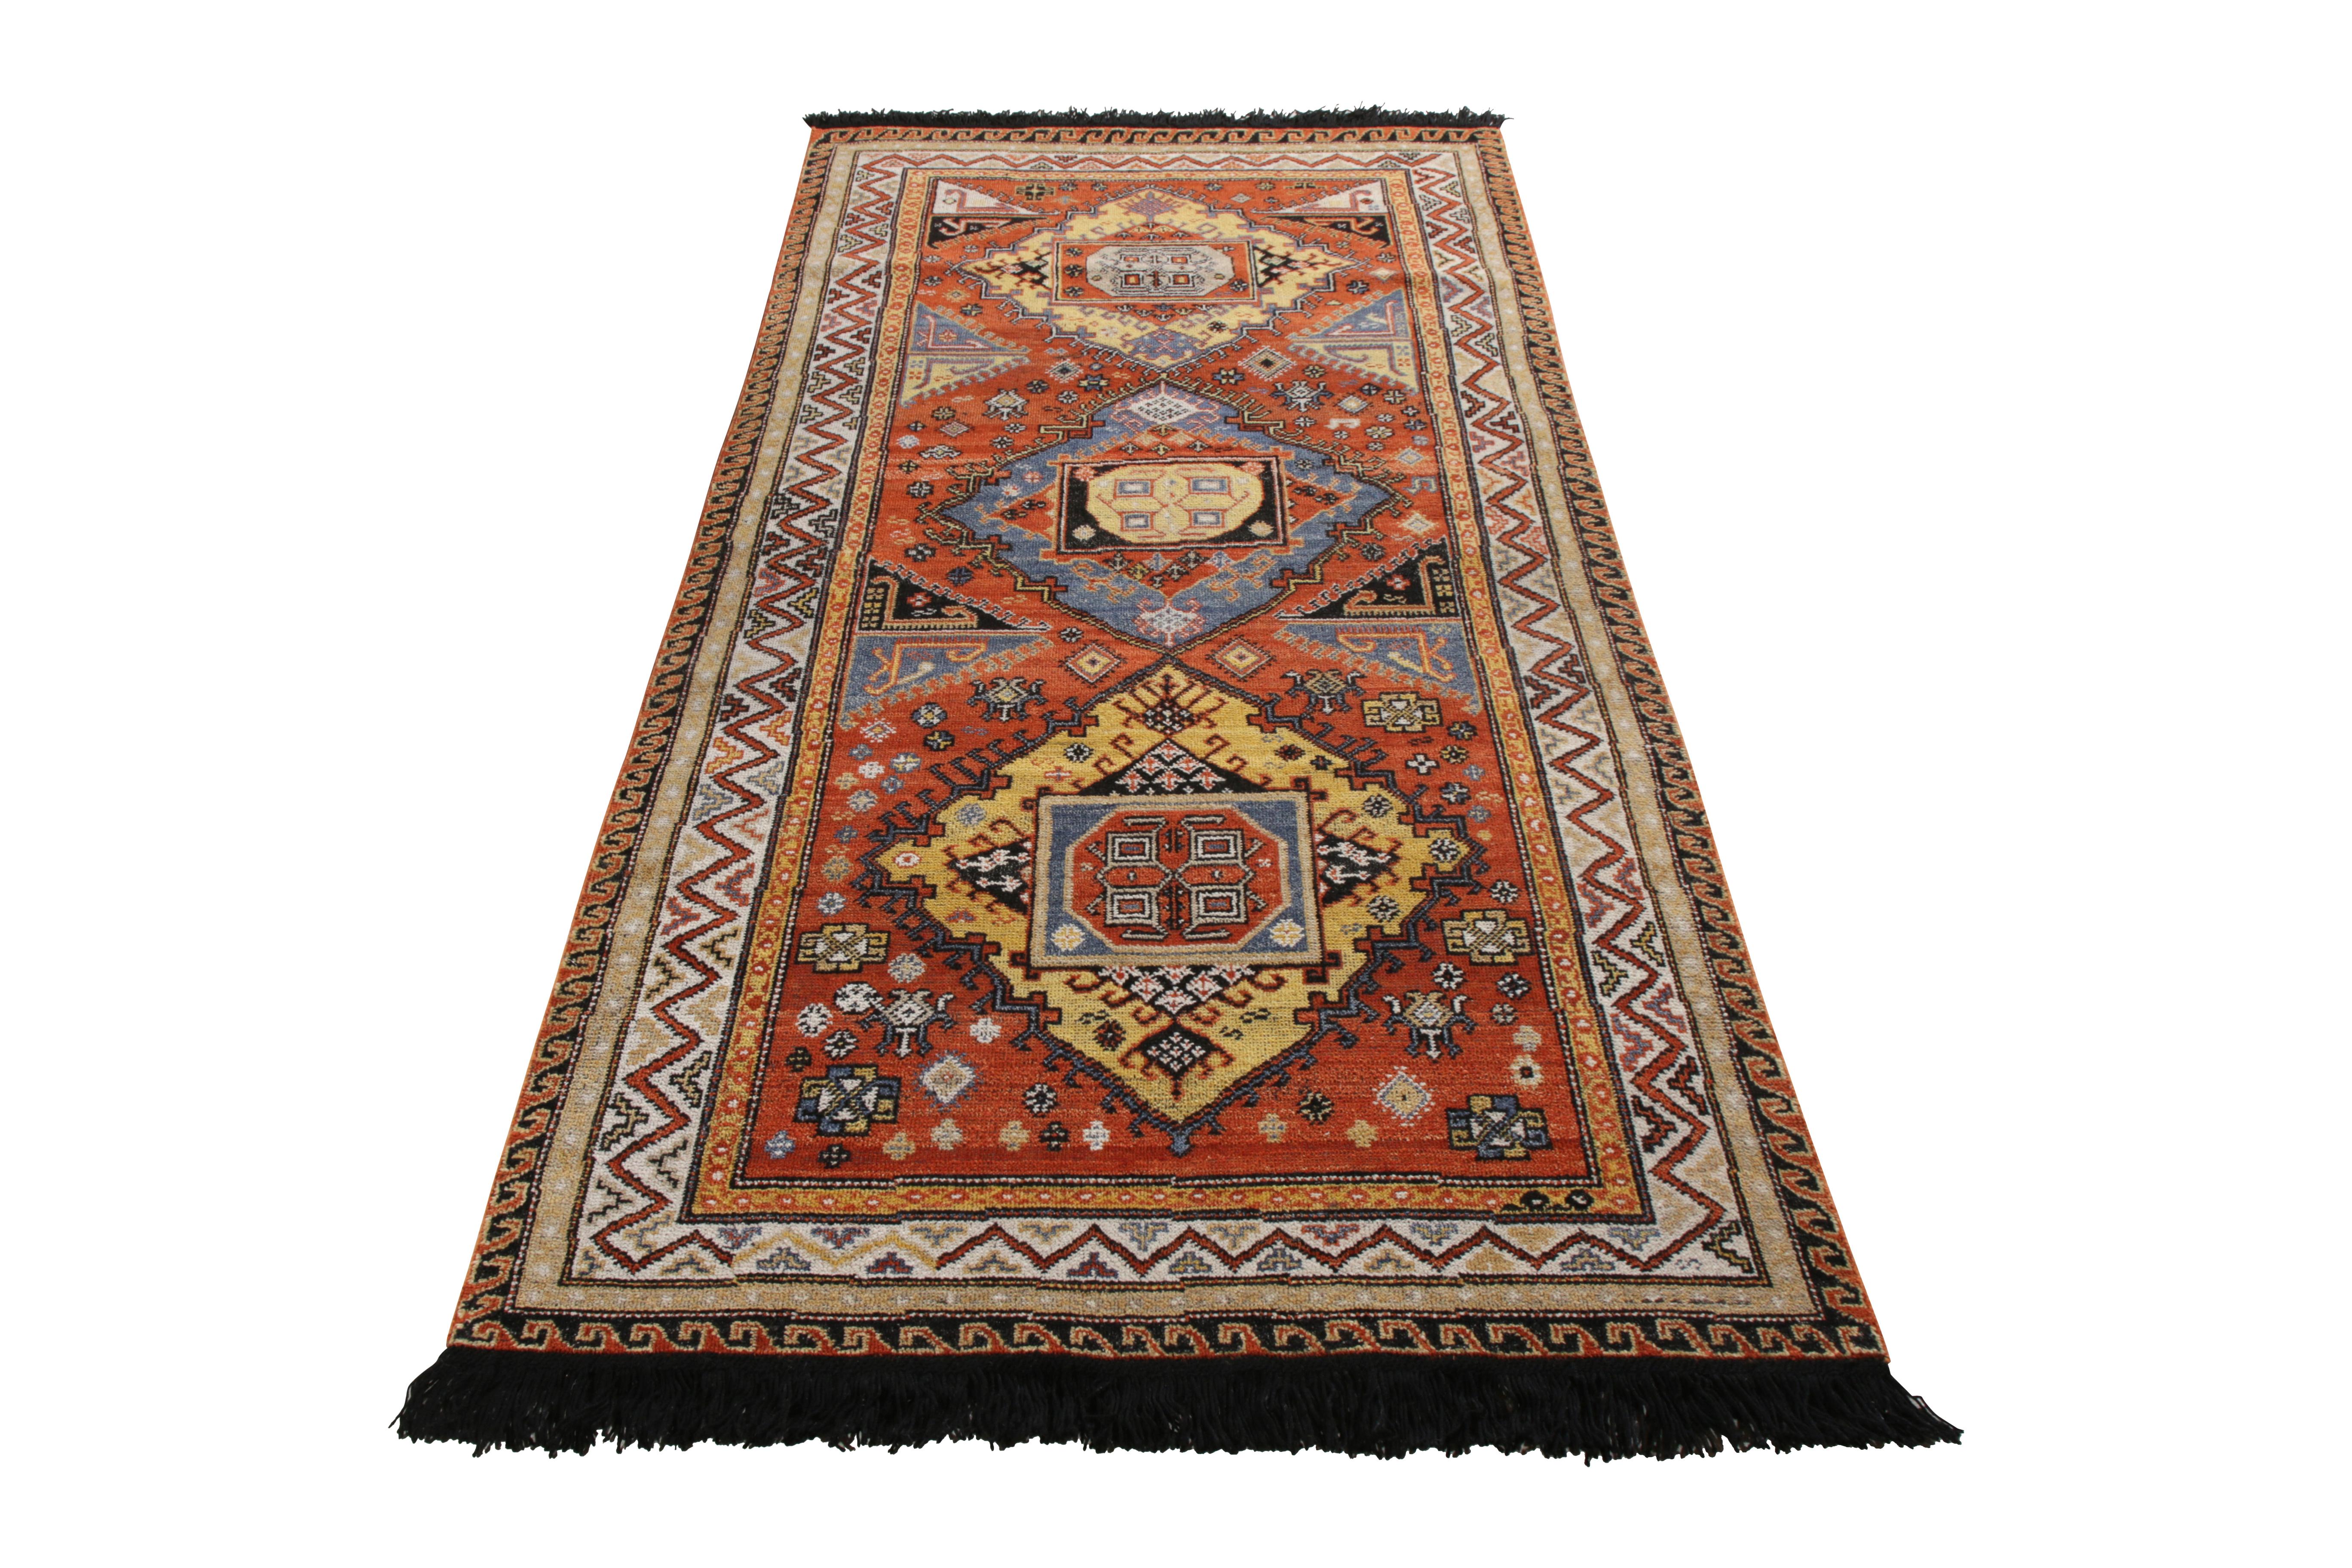 Une ode 4x8 aux célèbres styles de tapis Soumak en laine nouée à la main, de la collection Burano de Rug & Kilim. 
Les teintes chaudes d'orange et d'or clair, qui dominent les motifs de médaillons tribaux, sont d'une longueur proche de celle d'un